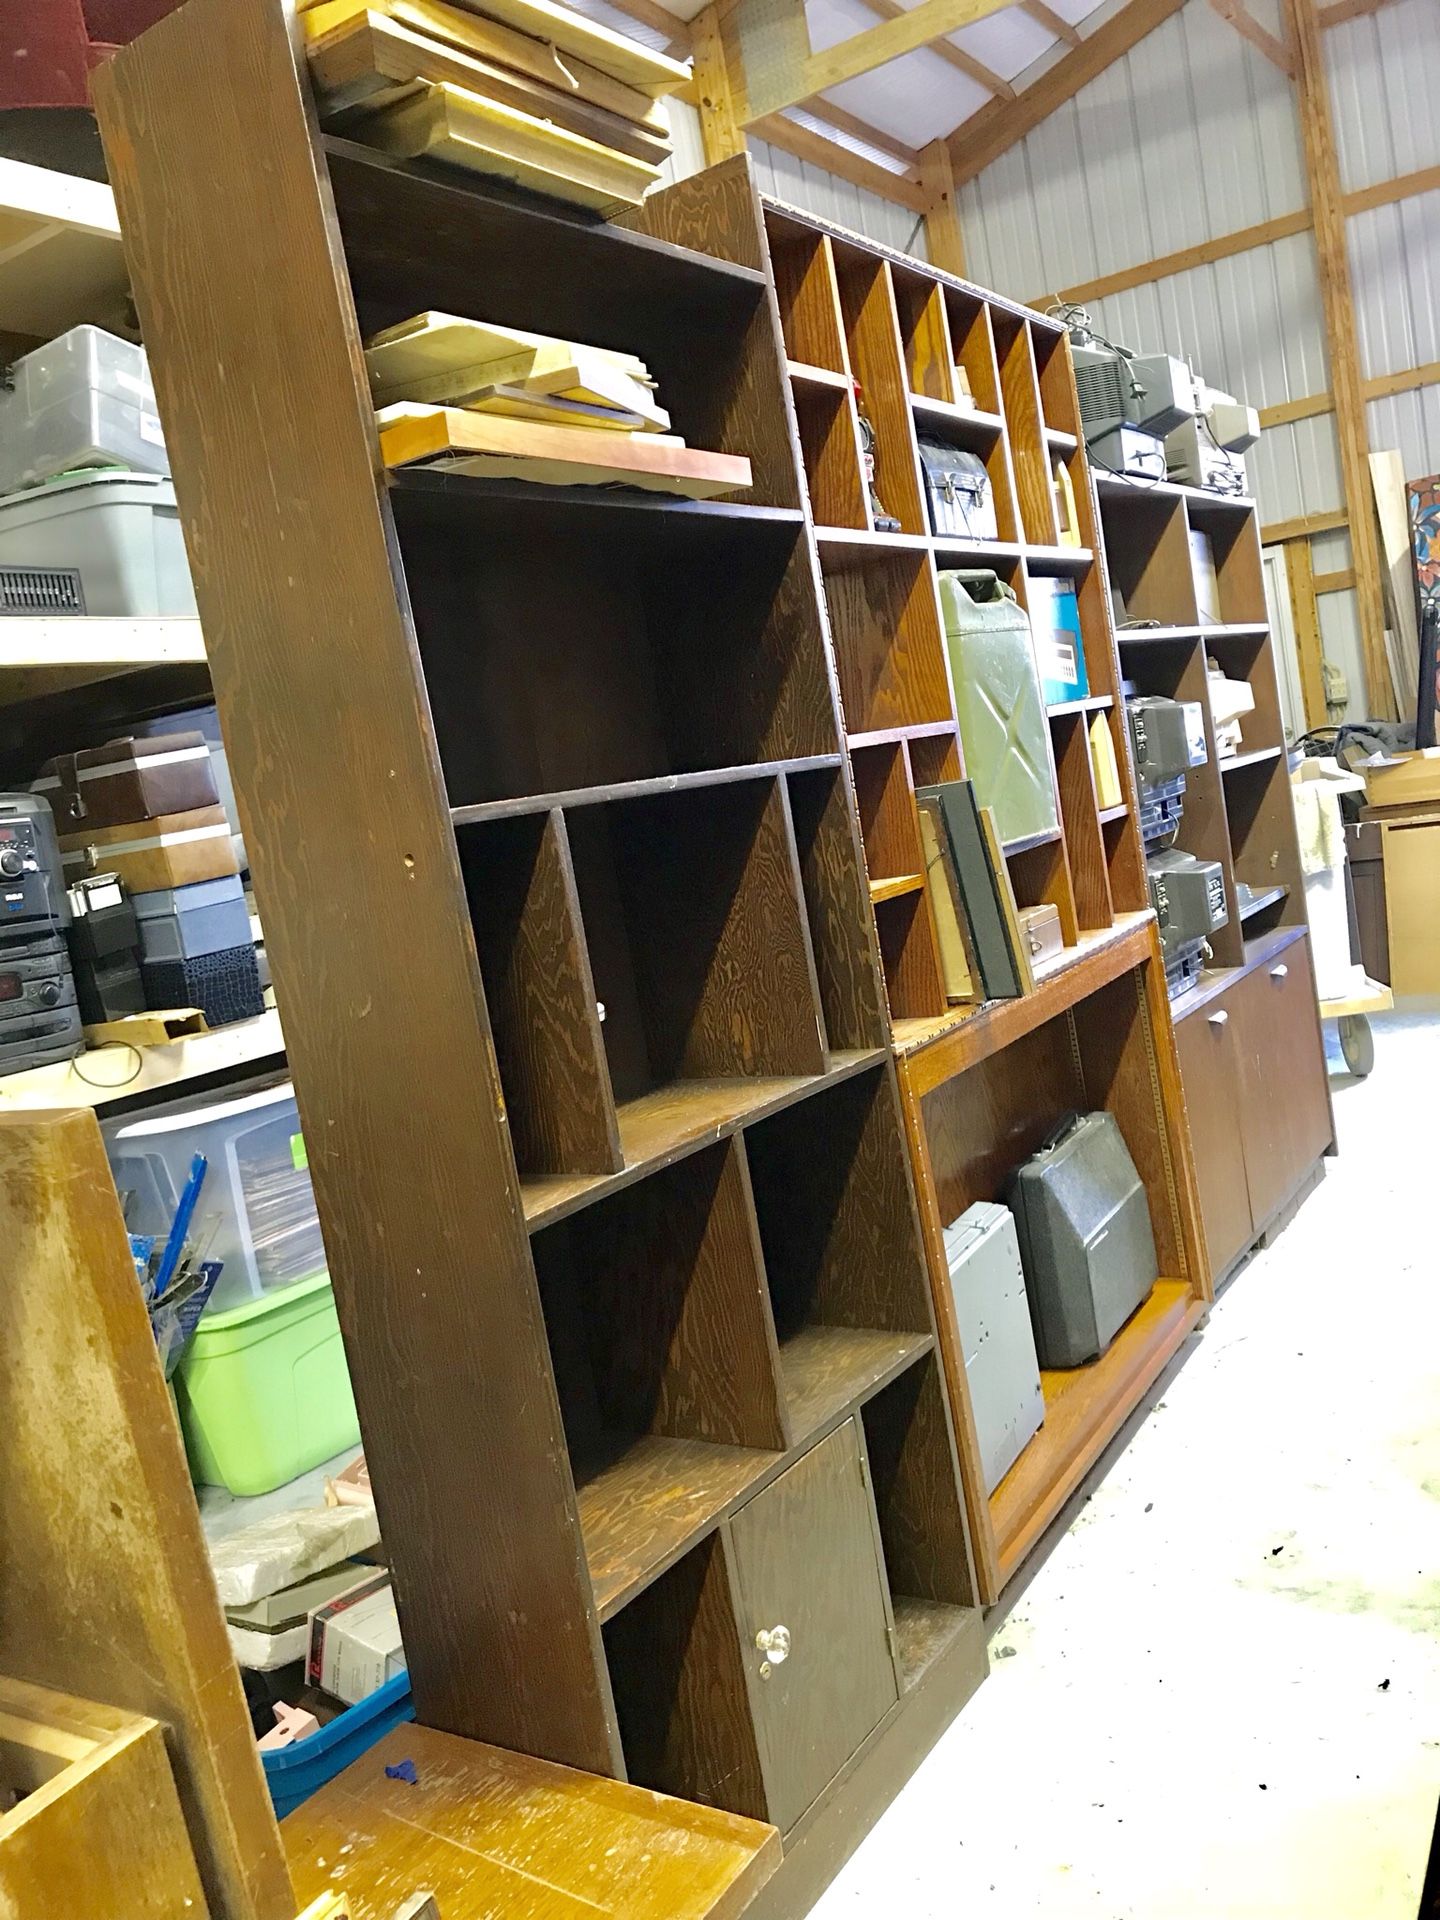 Room divider bookshelves mid century modern retro vintage shelving shelves MCM